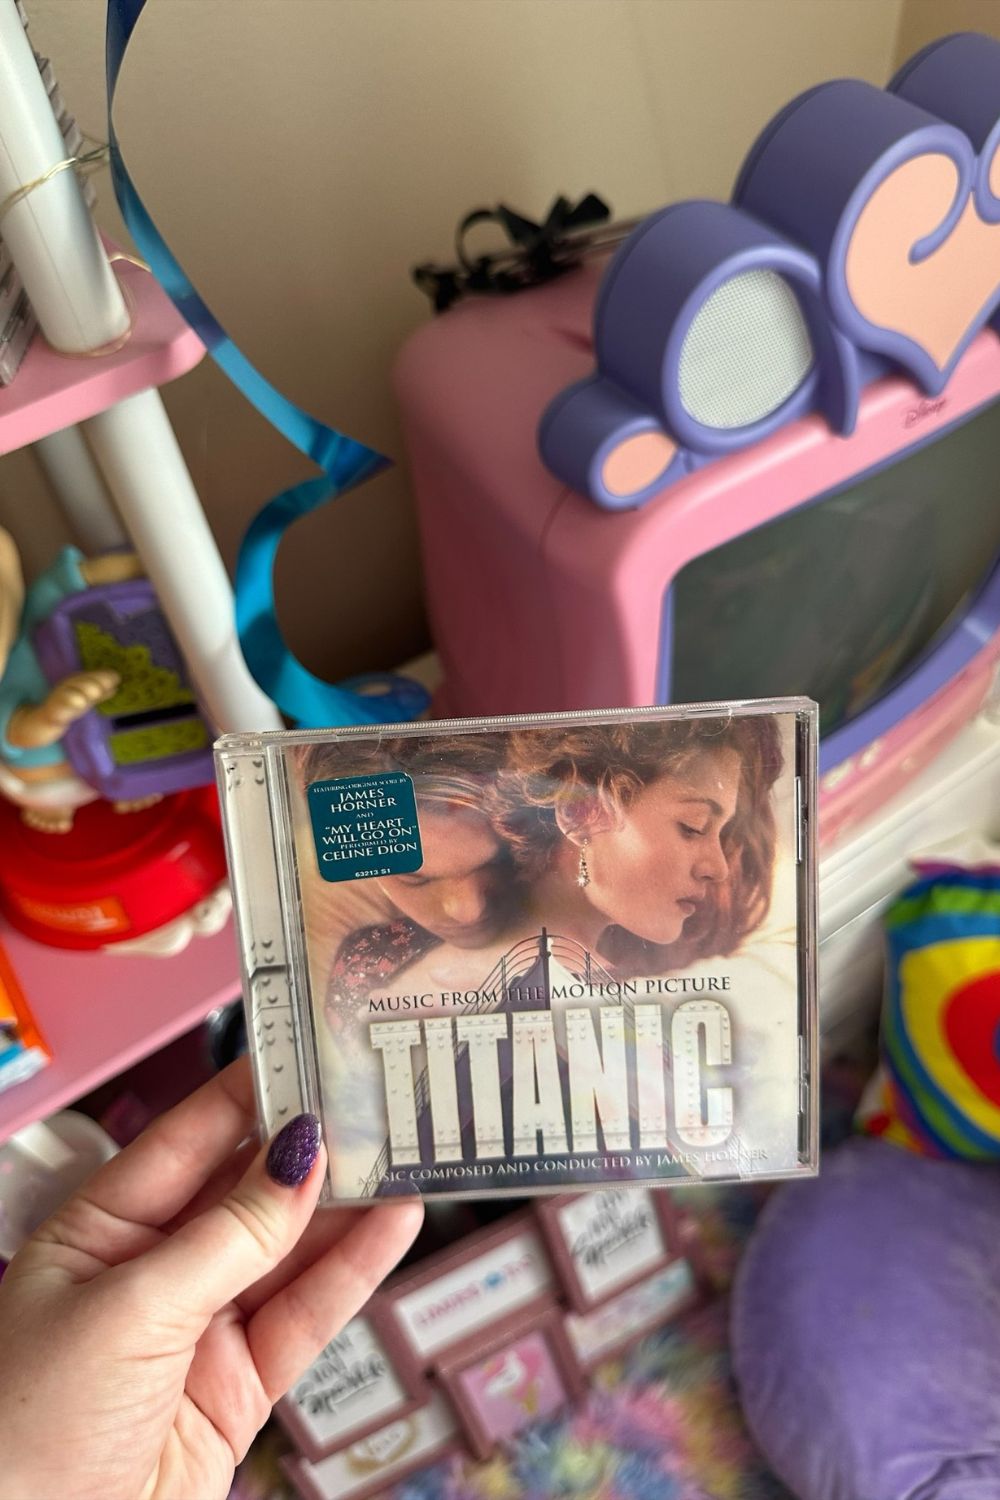 TITANIC SOUNDTRACK CD*